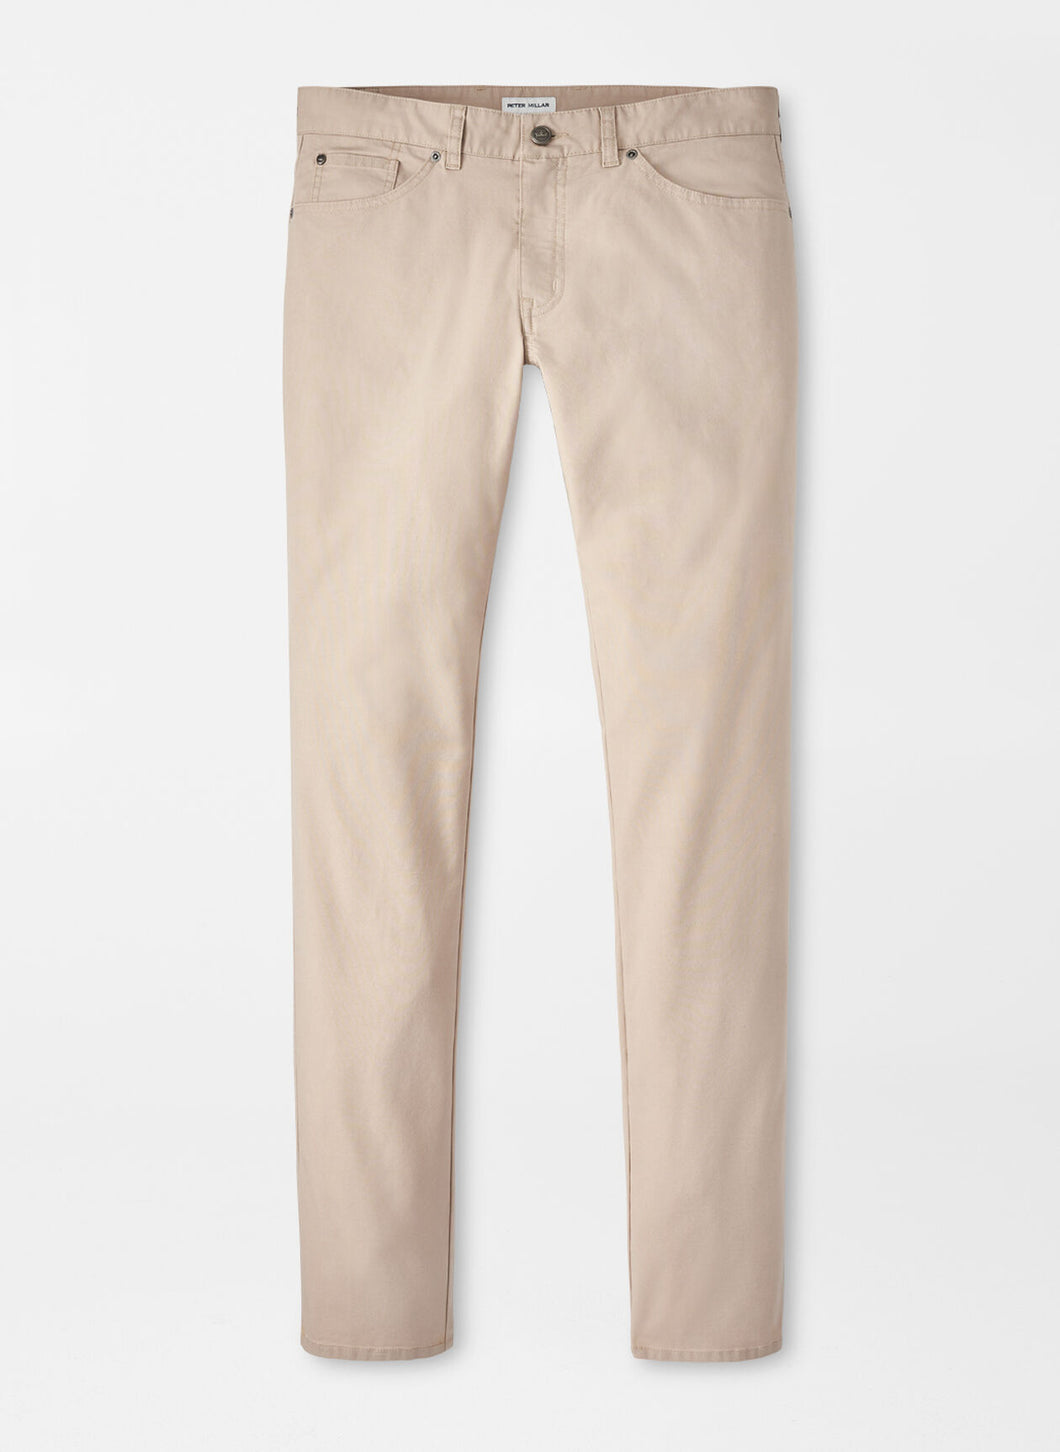 Peter Millar Crown Comfort Five-Pocket Pant in Khaki